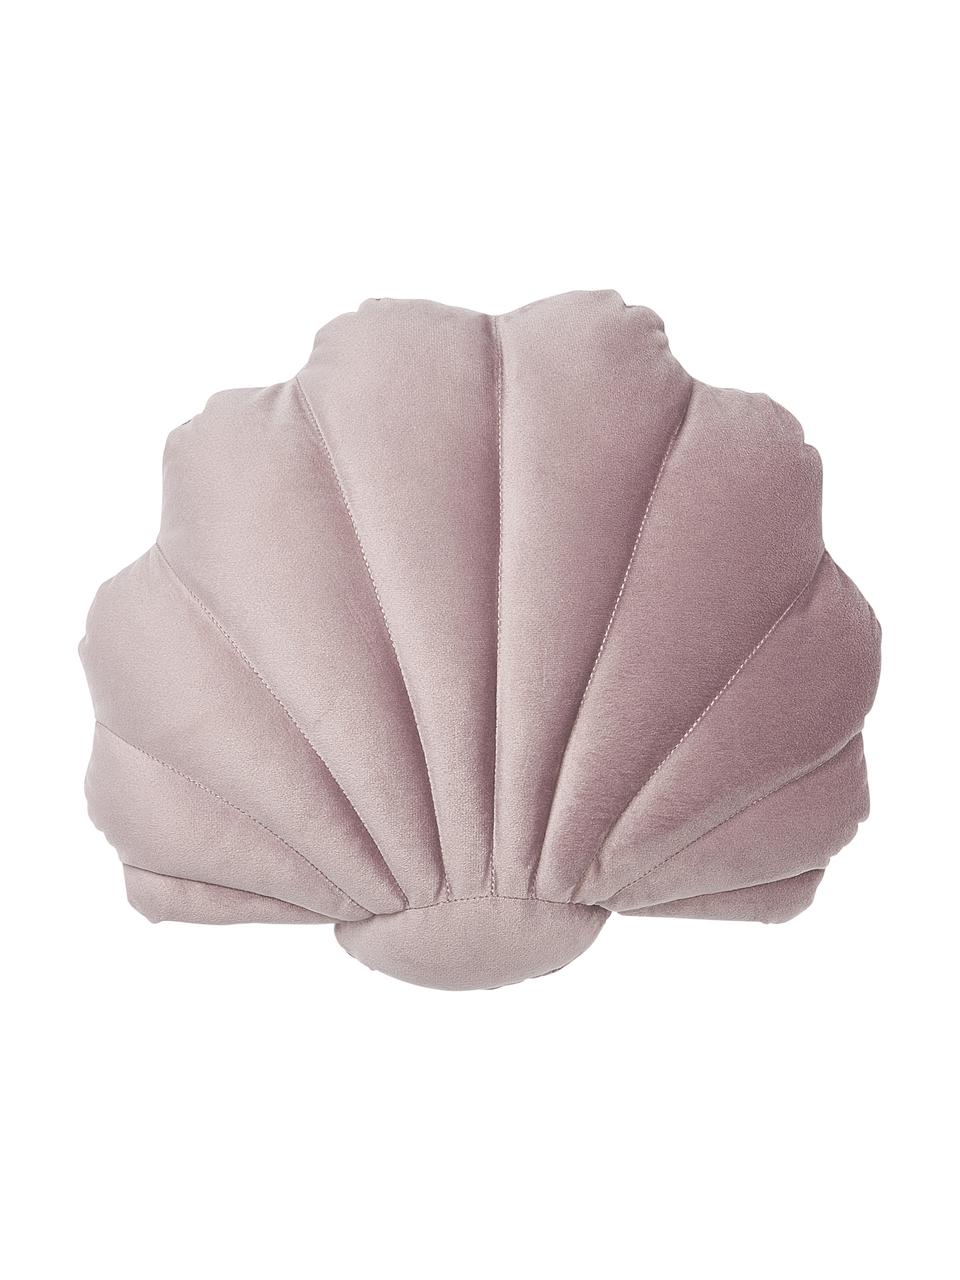 Samt-Kissen Shell in Muschelform, Vorderseite: 100% Polyestersamt, Rückseite: 100% Baumwolle, Taupe, B 32 x L 27 cm